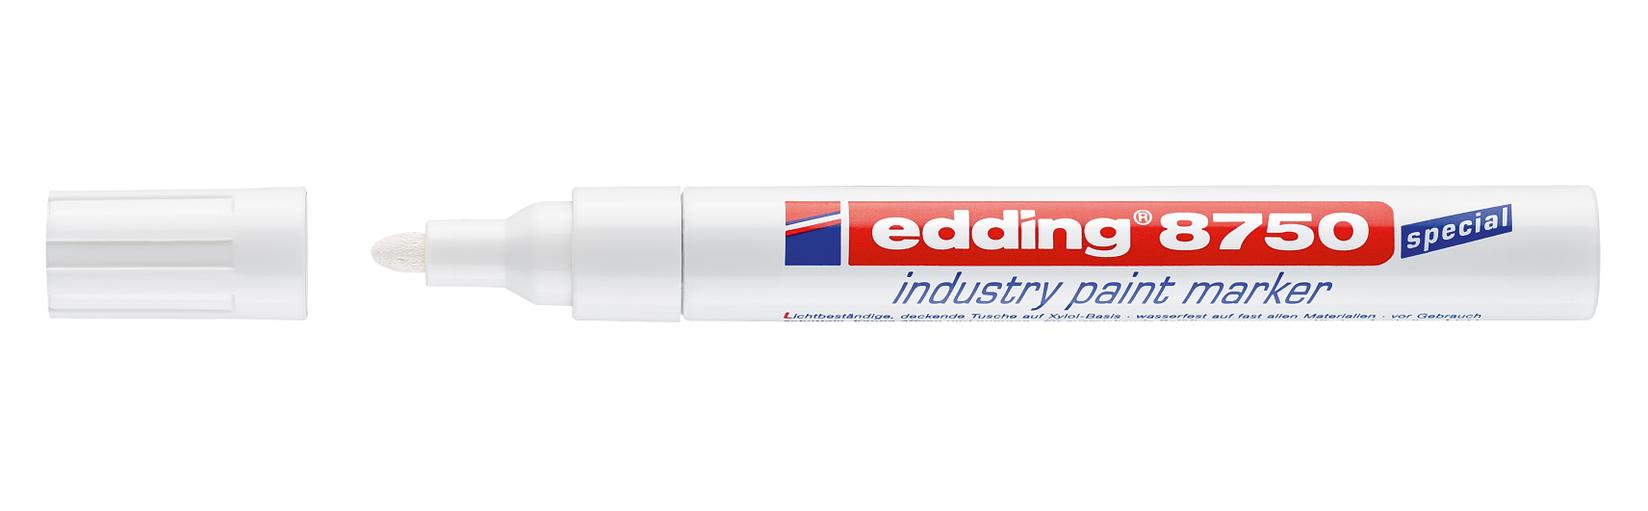 EDDING Industrijski paint marker E-8750 2-4mm beli